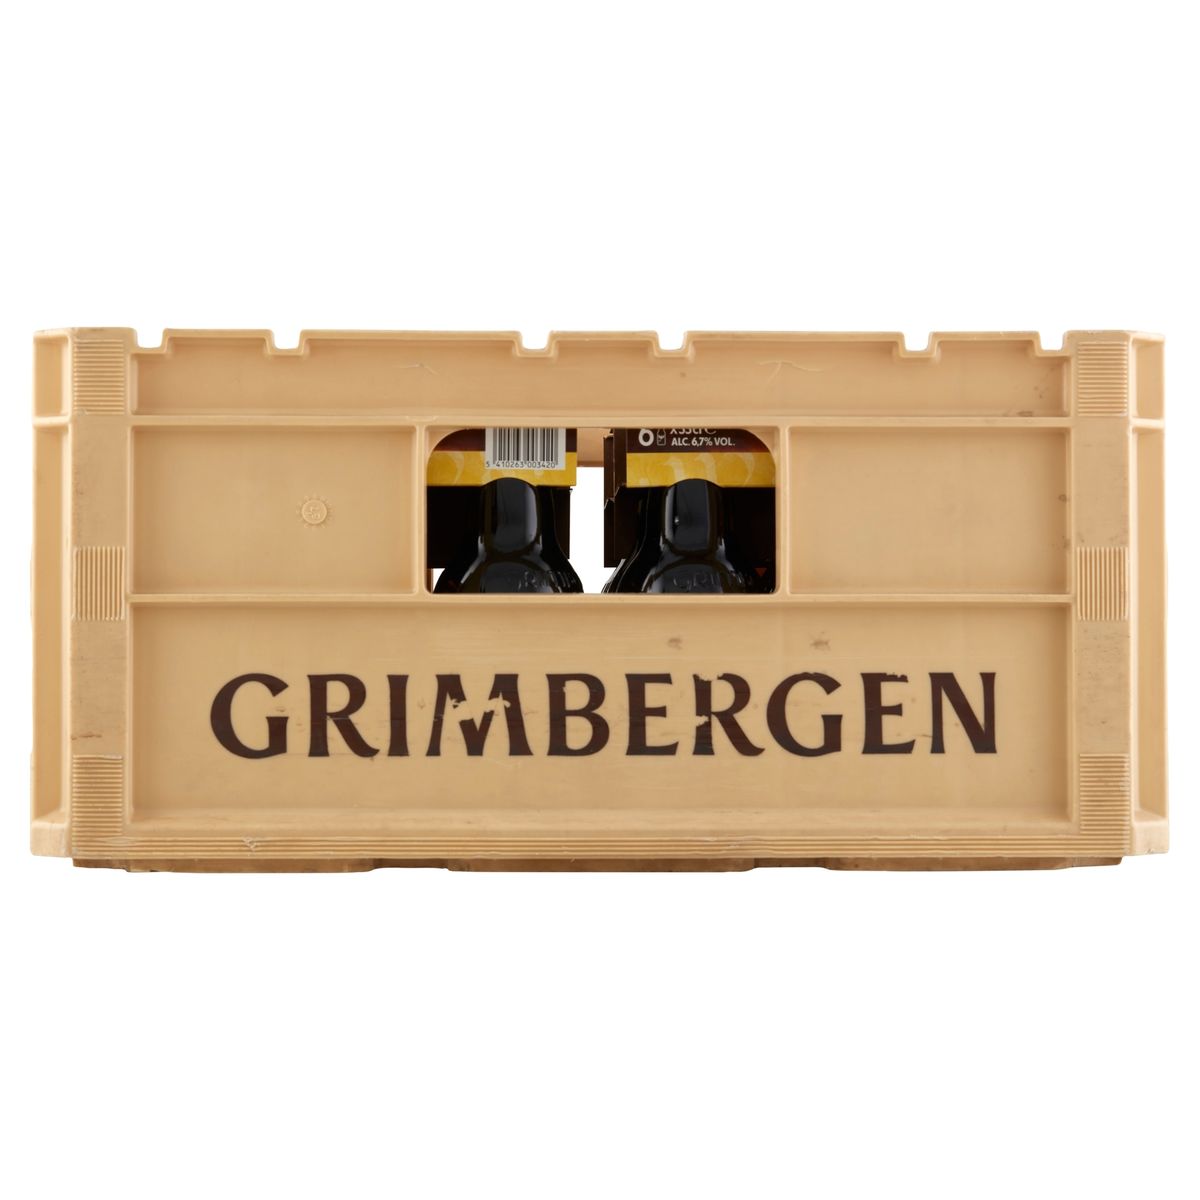 Grimbergen Abdijbier Blond Krat 4 x 6 x 33 cl